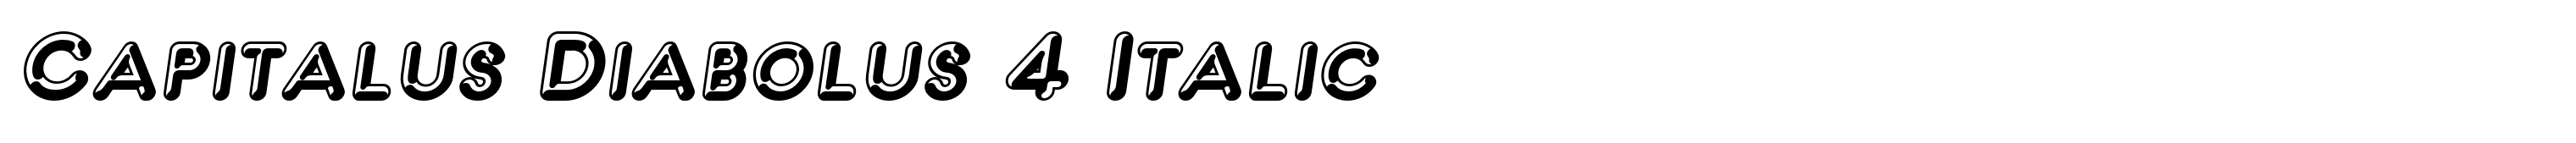 Capitalus Diabolus 4 Italic